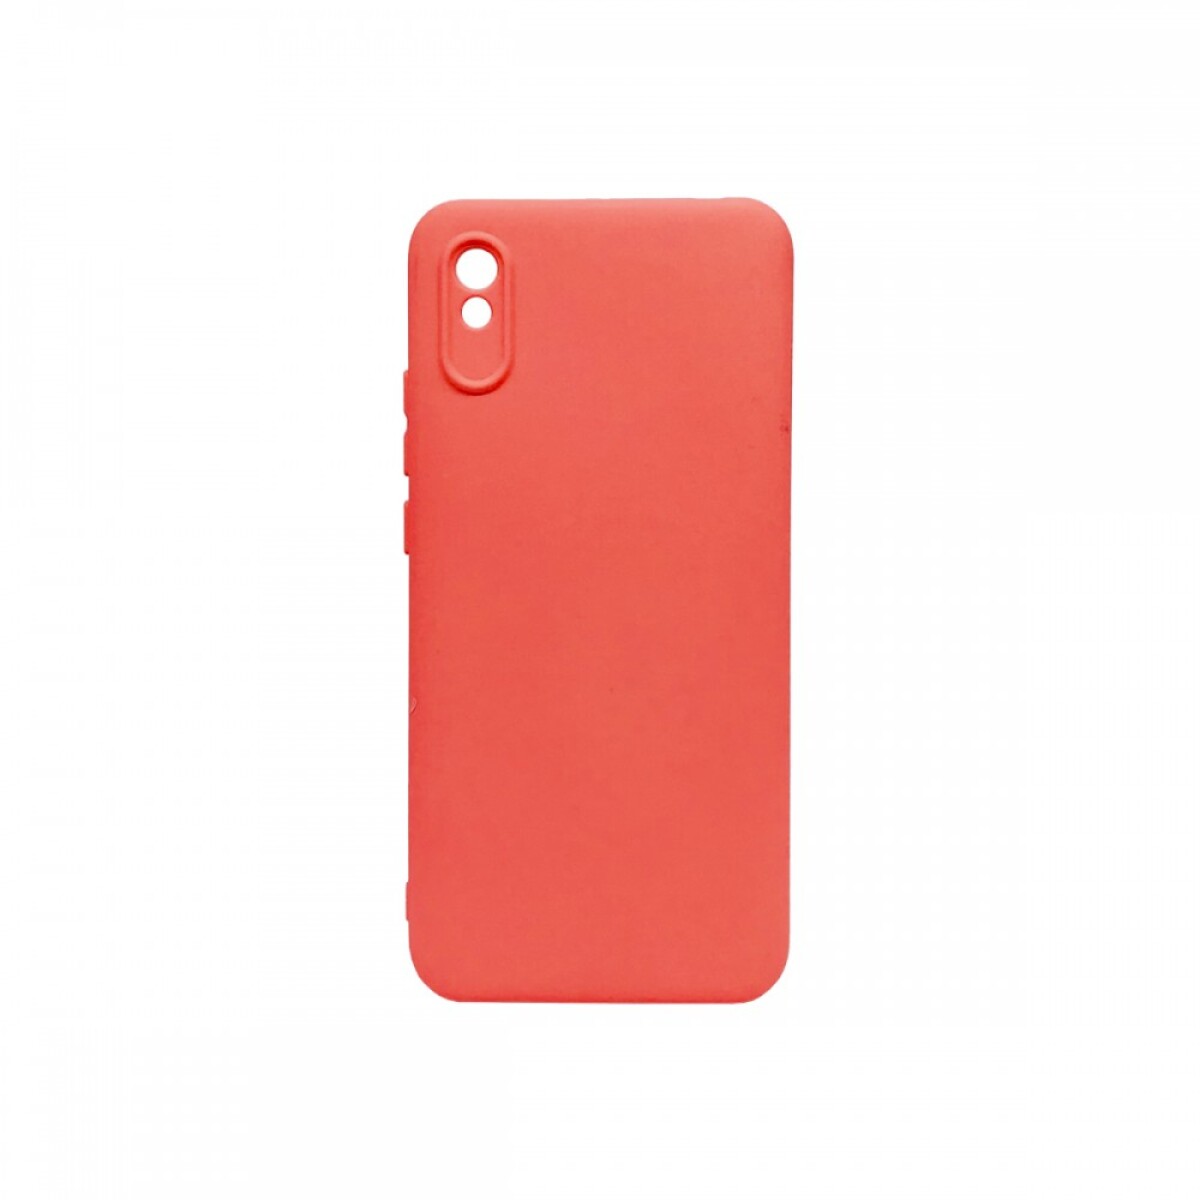 Protector Case de Silicona para Xiaomi Redmi 9A Rojo